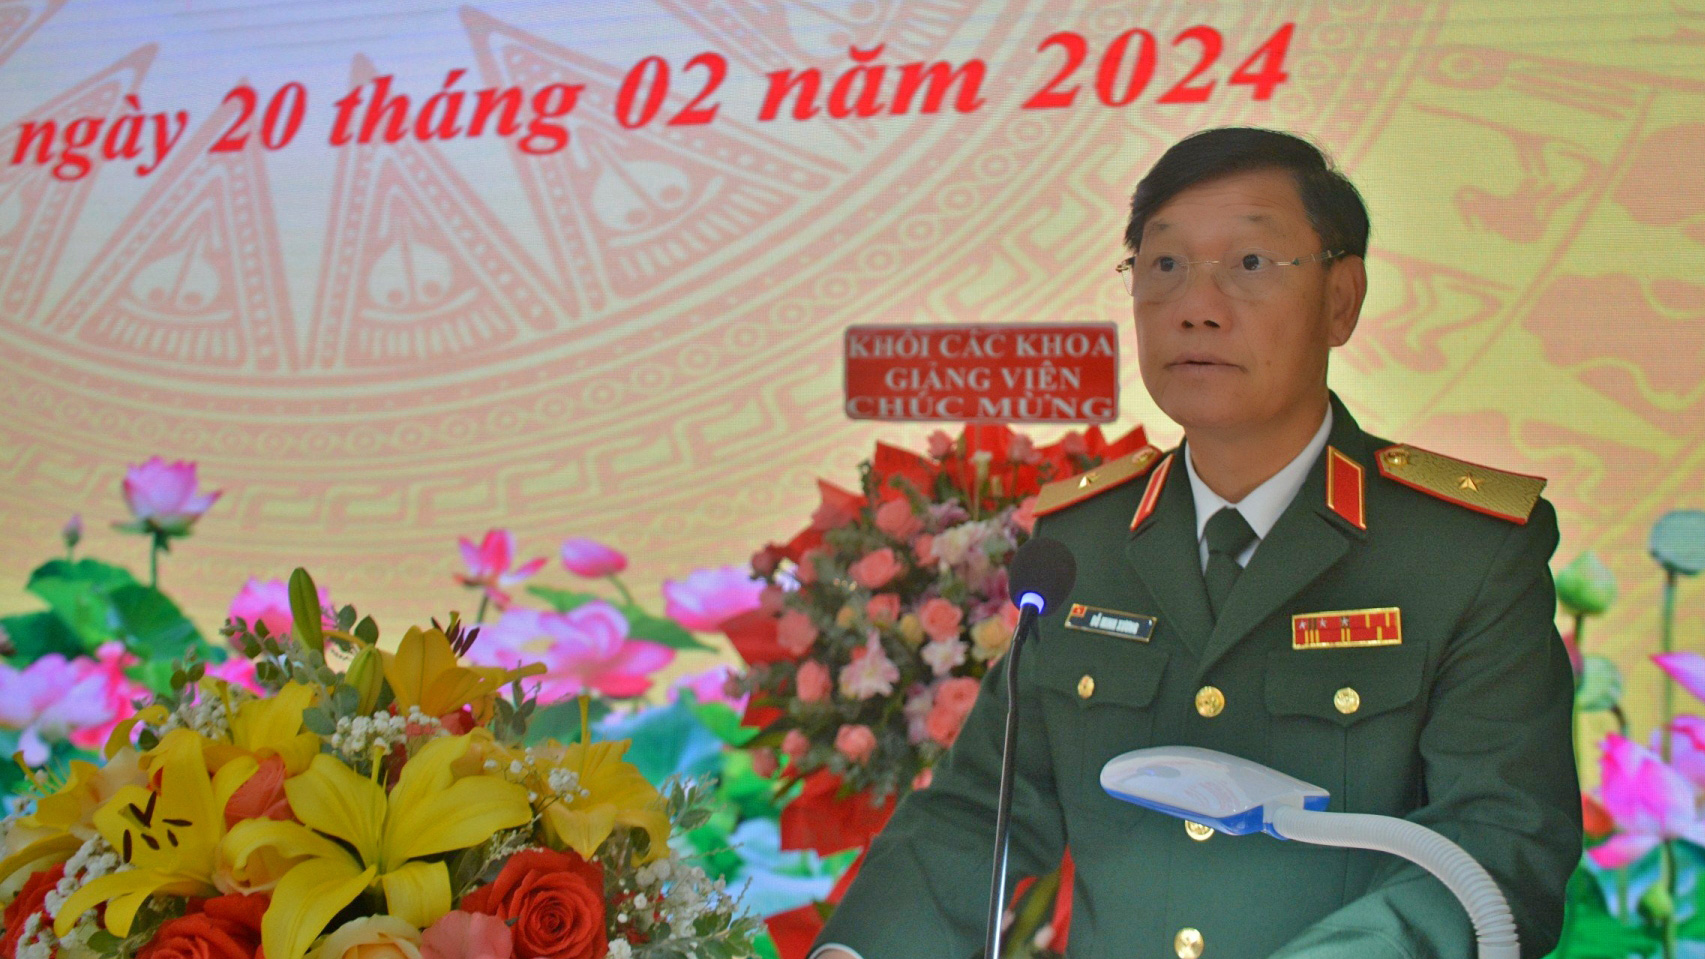 Thiếu tướng Đỗ Minh Xương - Giám đốc Học viện phát biểu tại Lễ khai giảng